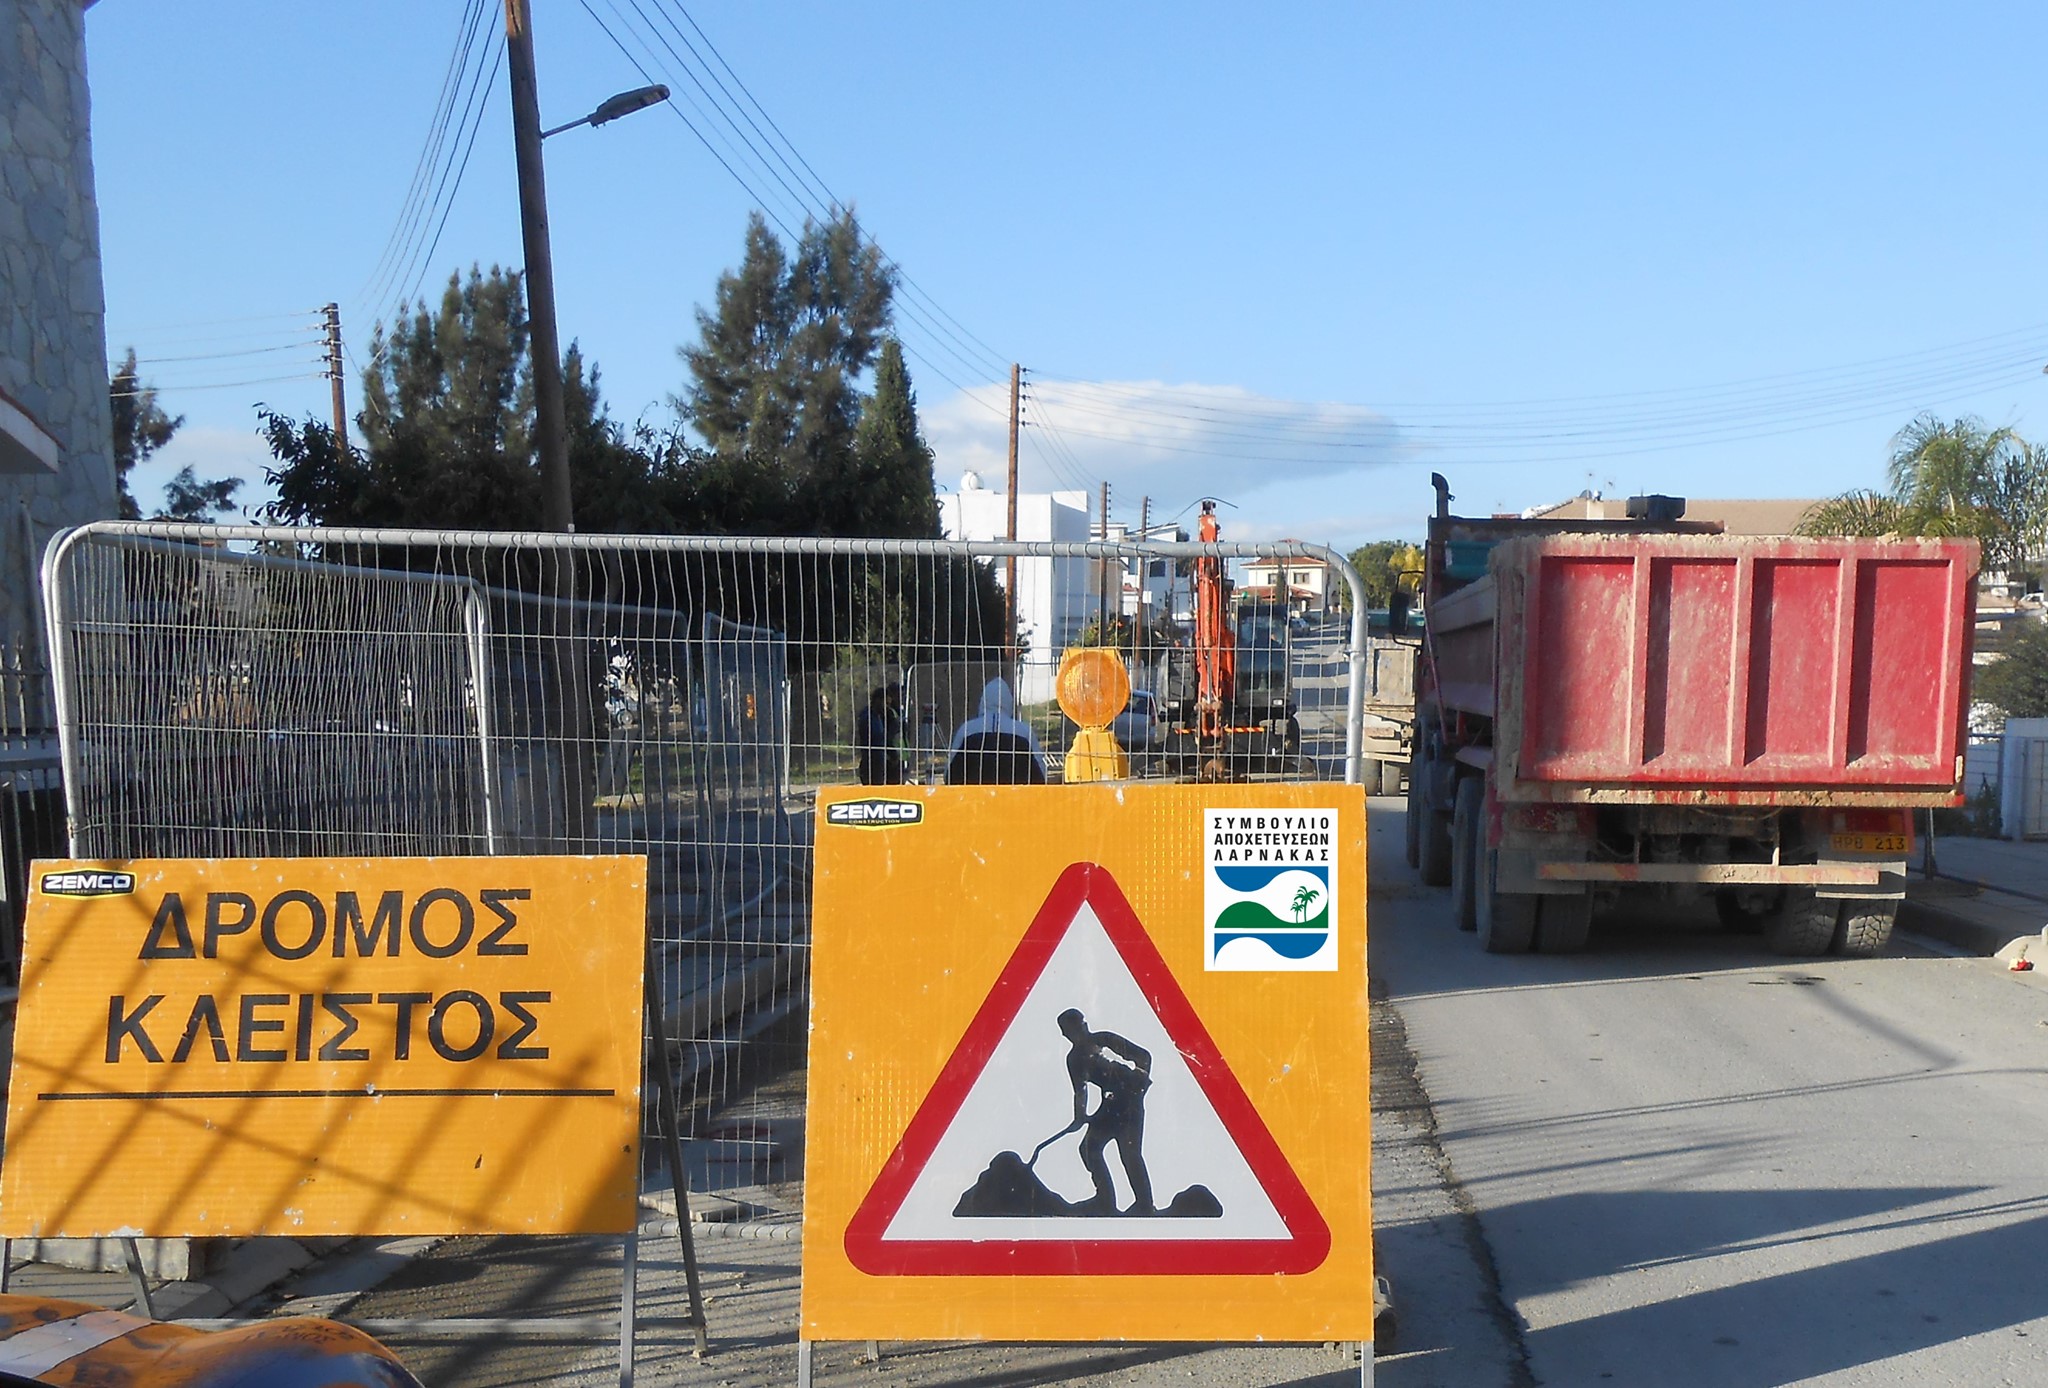 Δείτε ποιοι δρόμοι είναι κλειστοί στη Λάρνακα λόγω κατασκευαστικών έργων